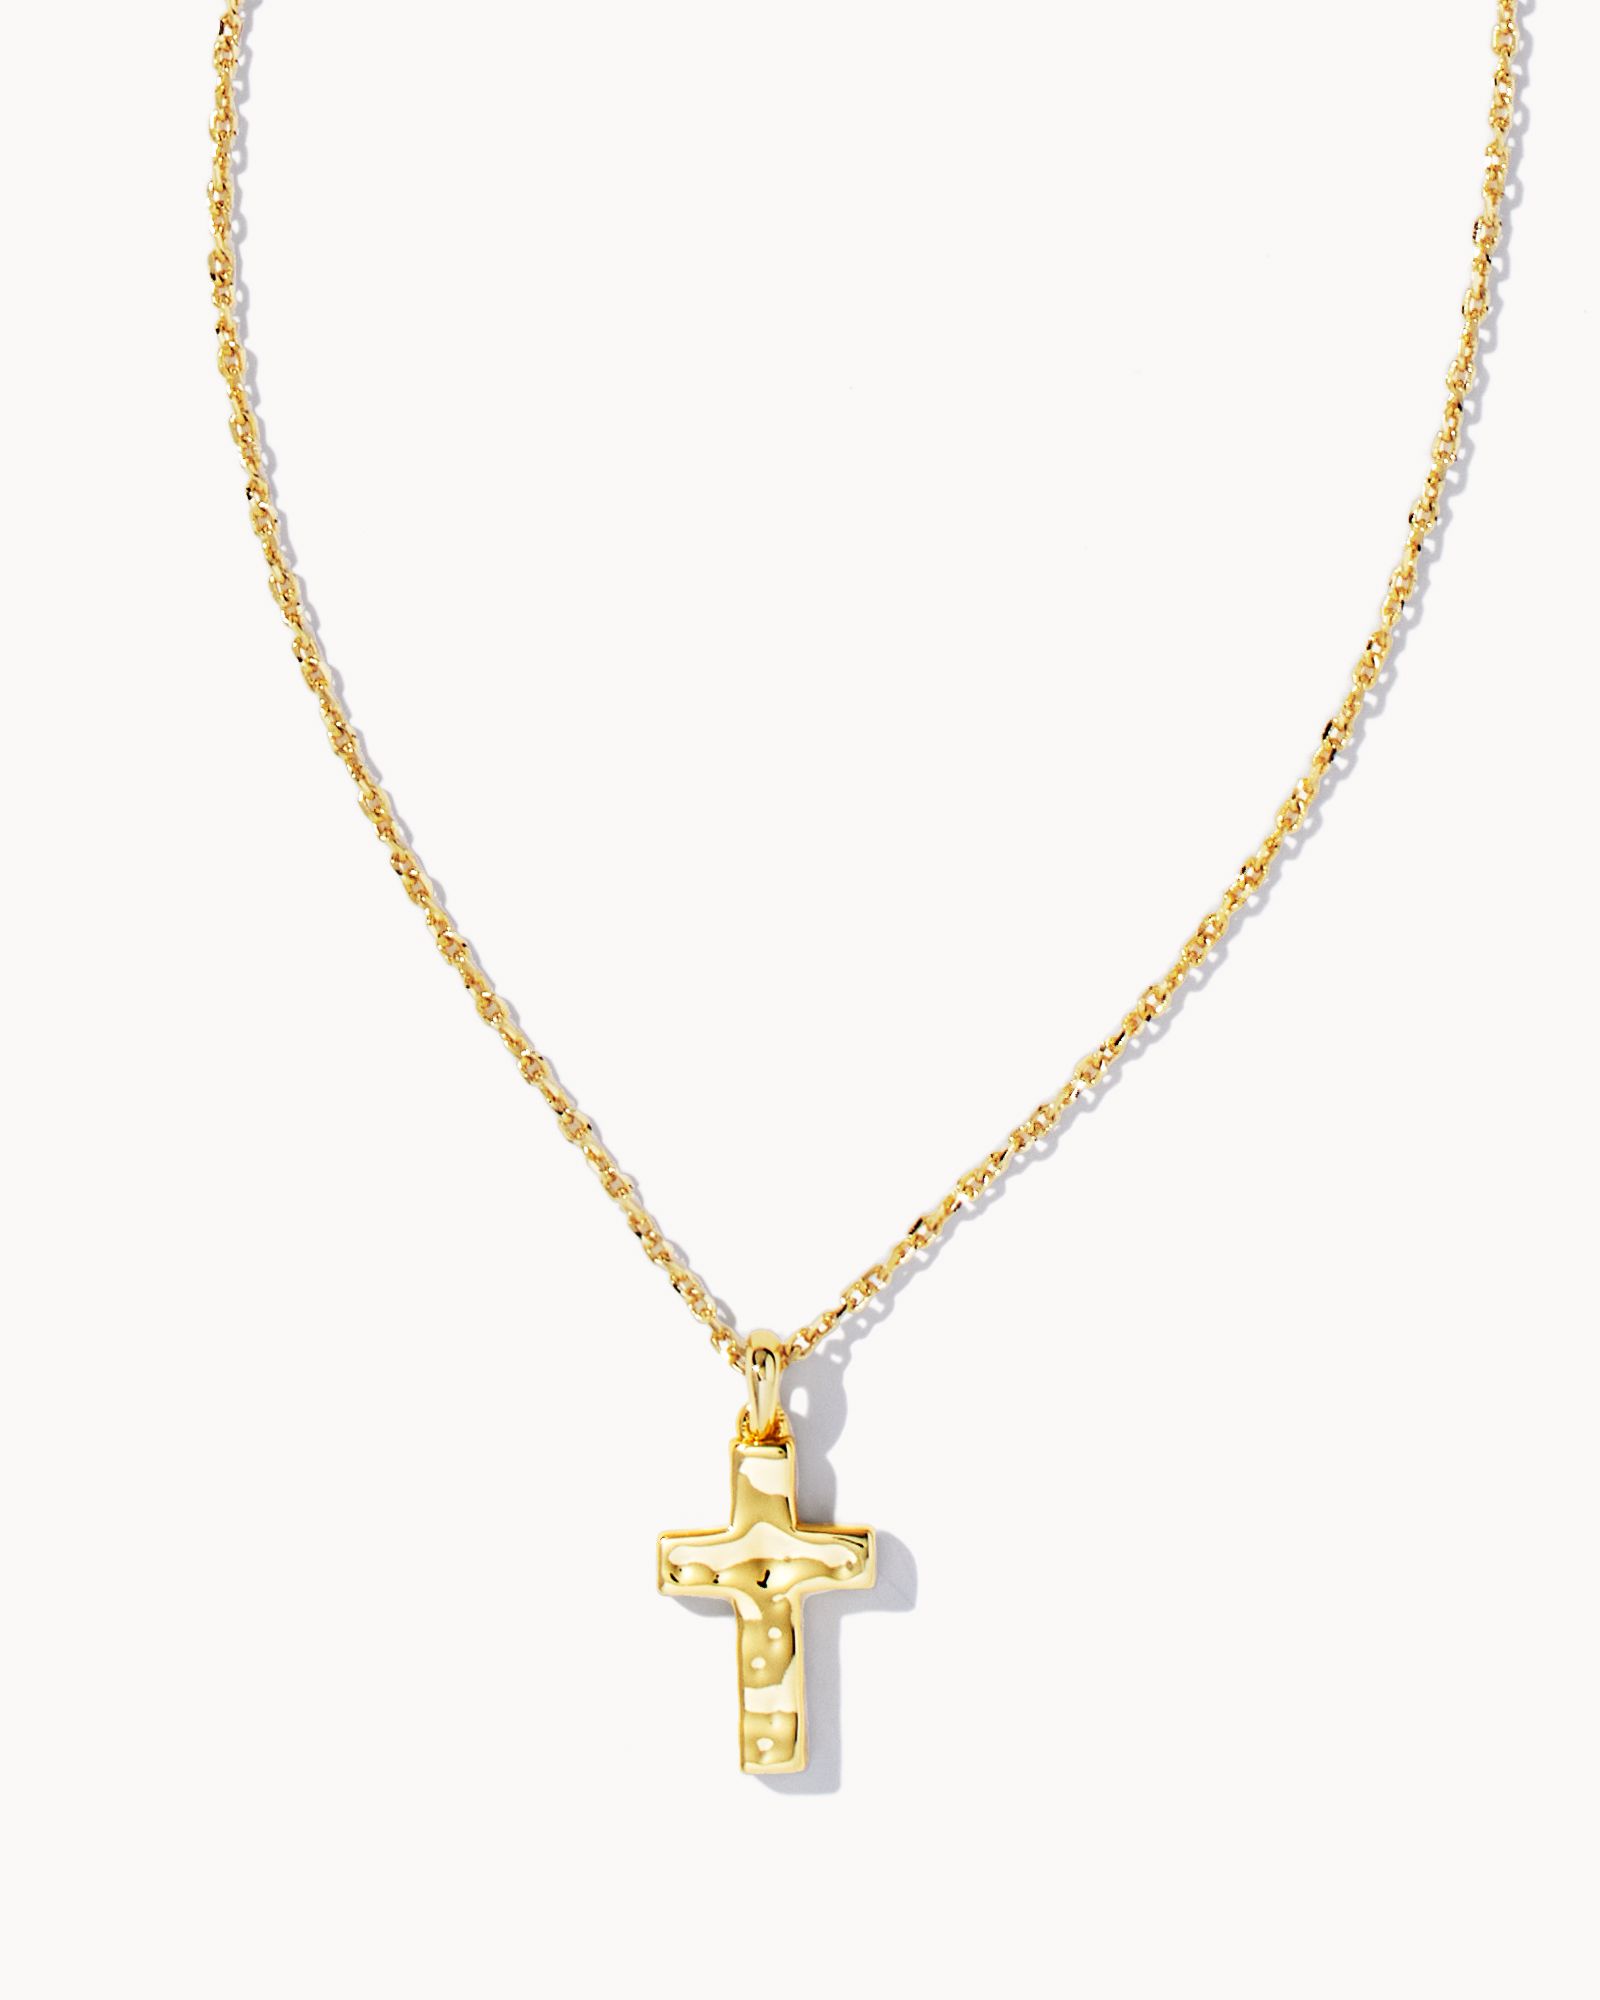 Cross Pendant Necklace in Gold | Kendra Scott | Kendra Scott